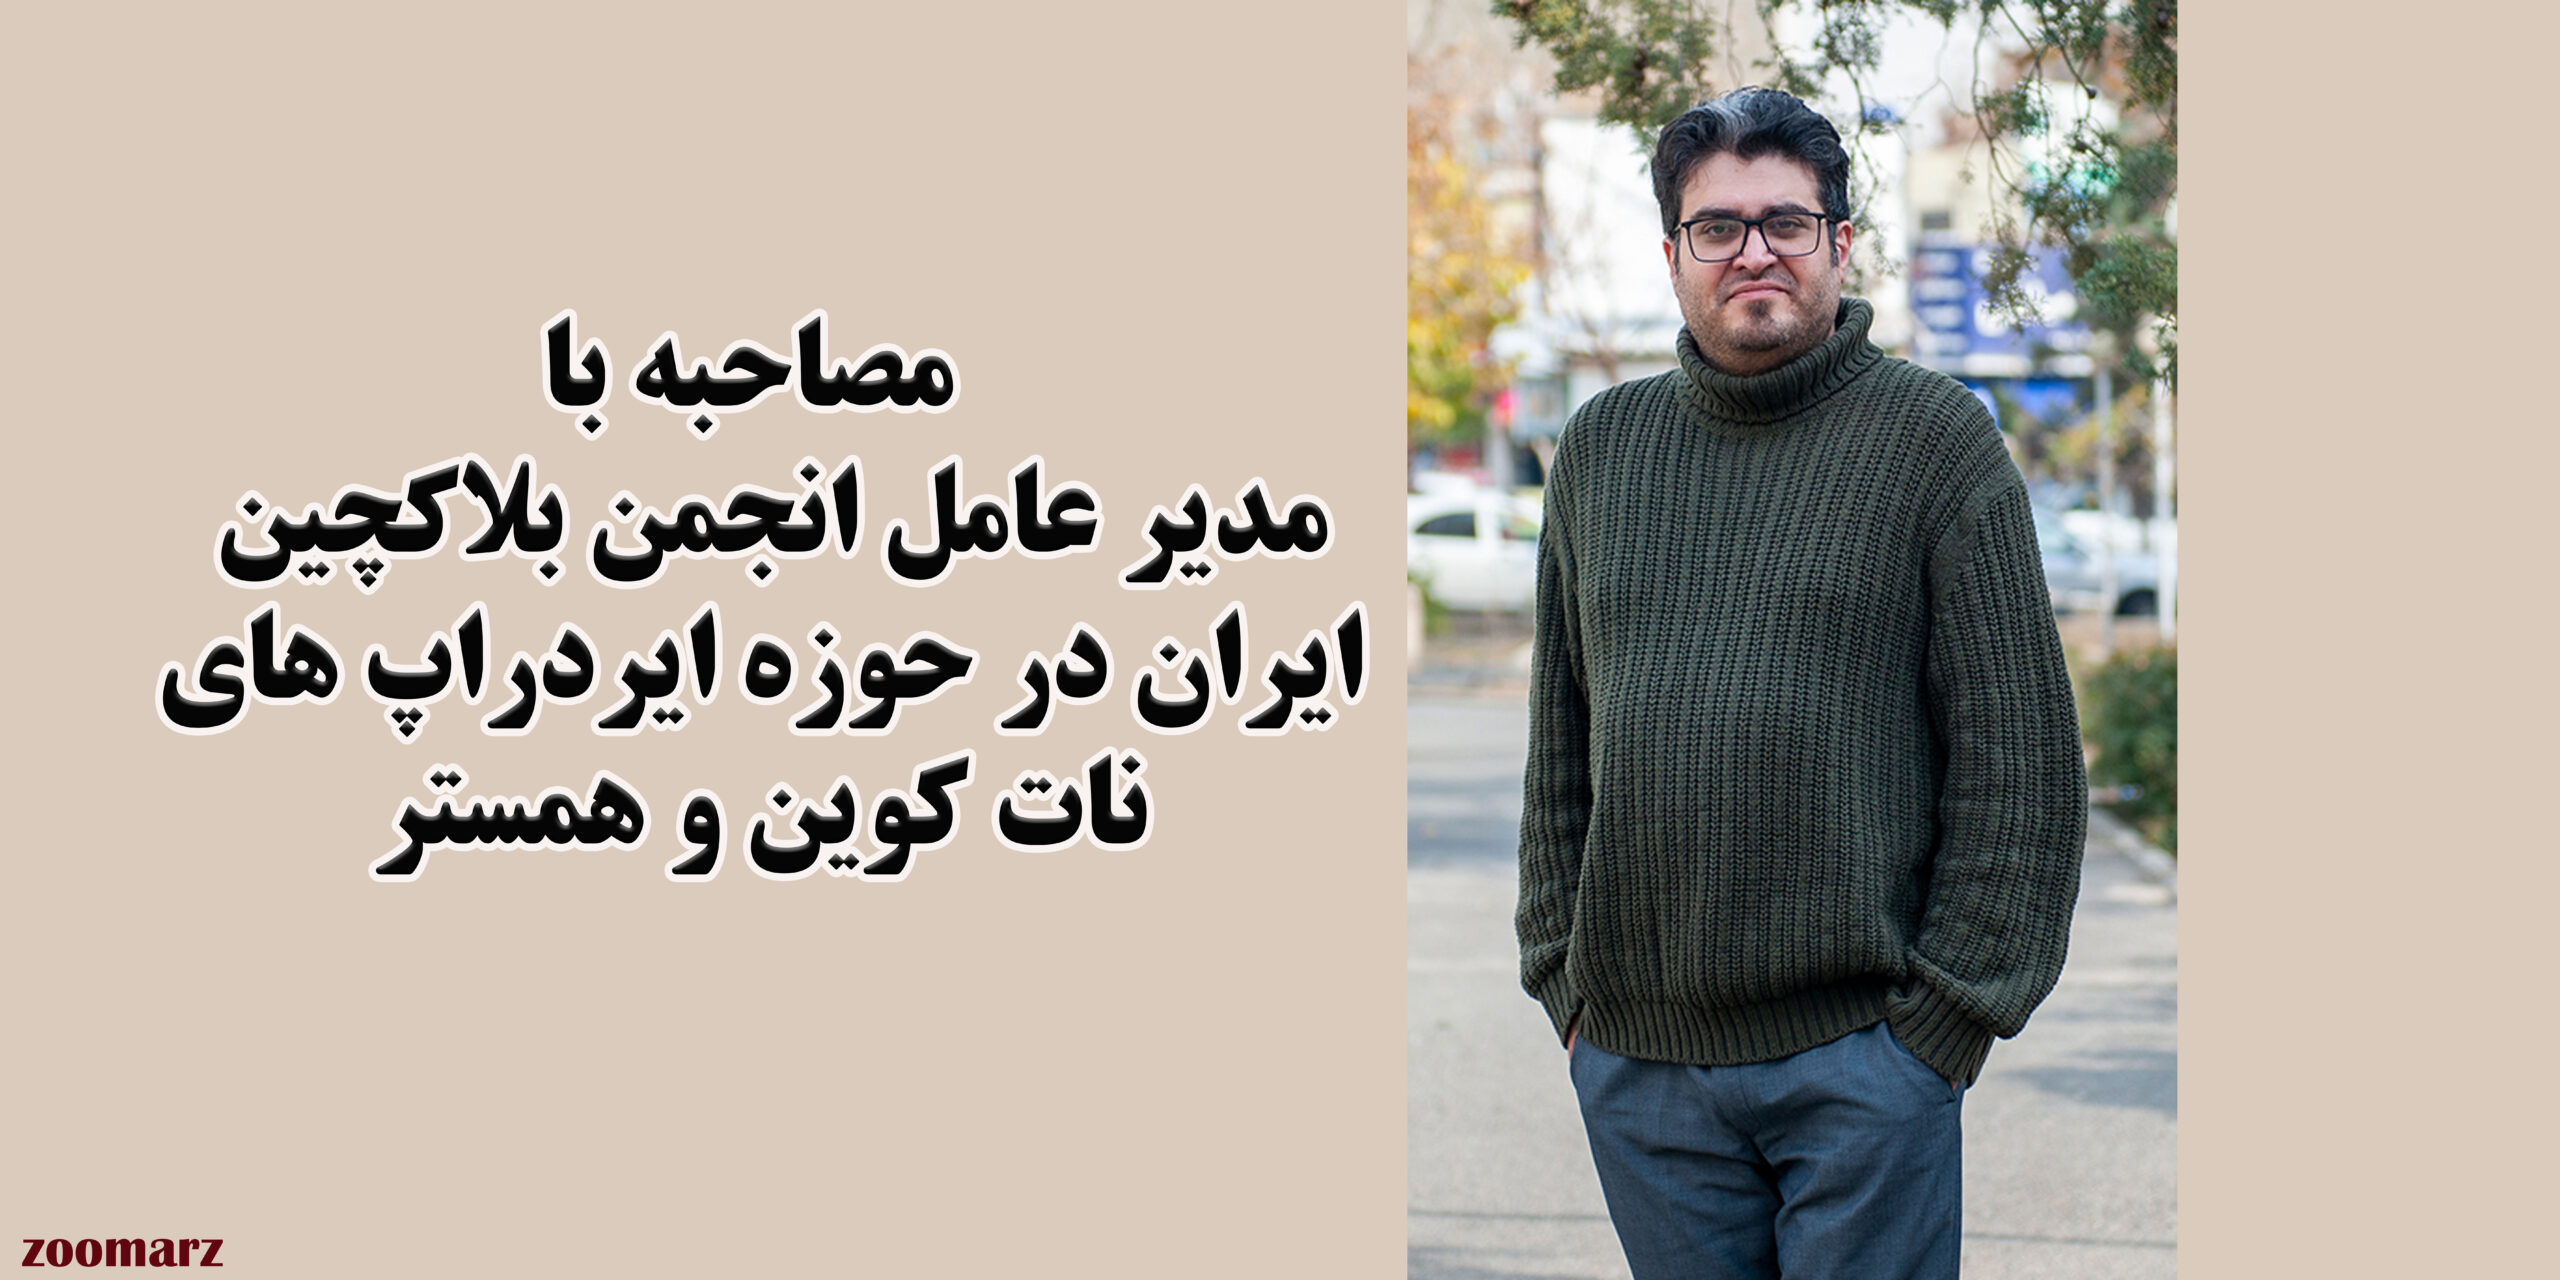 مصاحبه صوتی با کاوه مشتاق، مدیر عامل انجمن بلاکچین ایران در حوزه ایردراپ های نات کوین و همستر